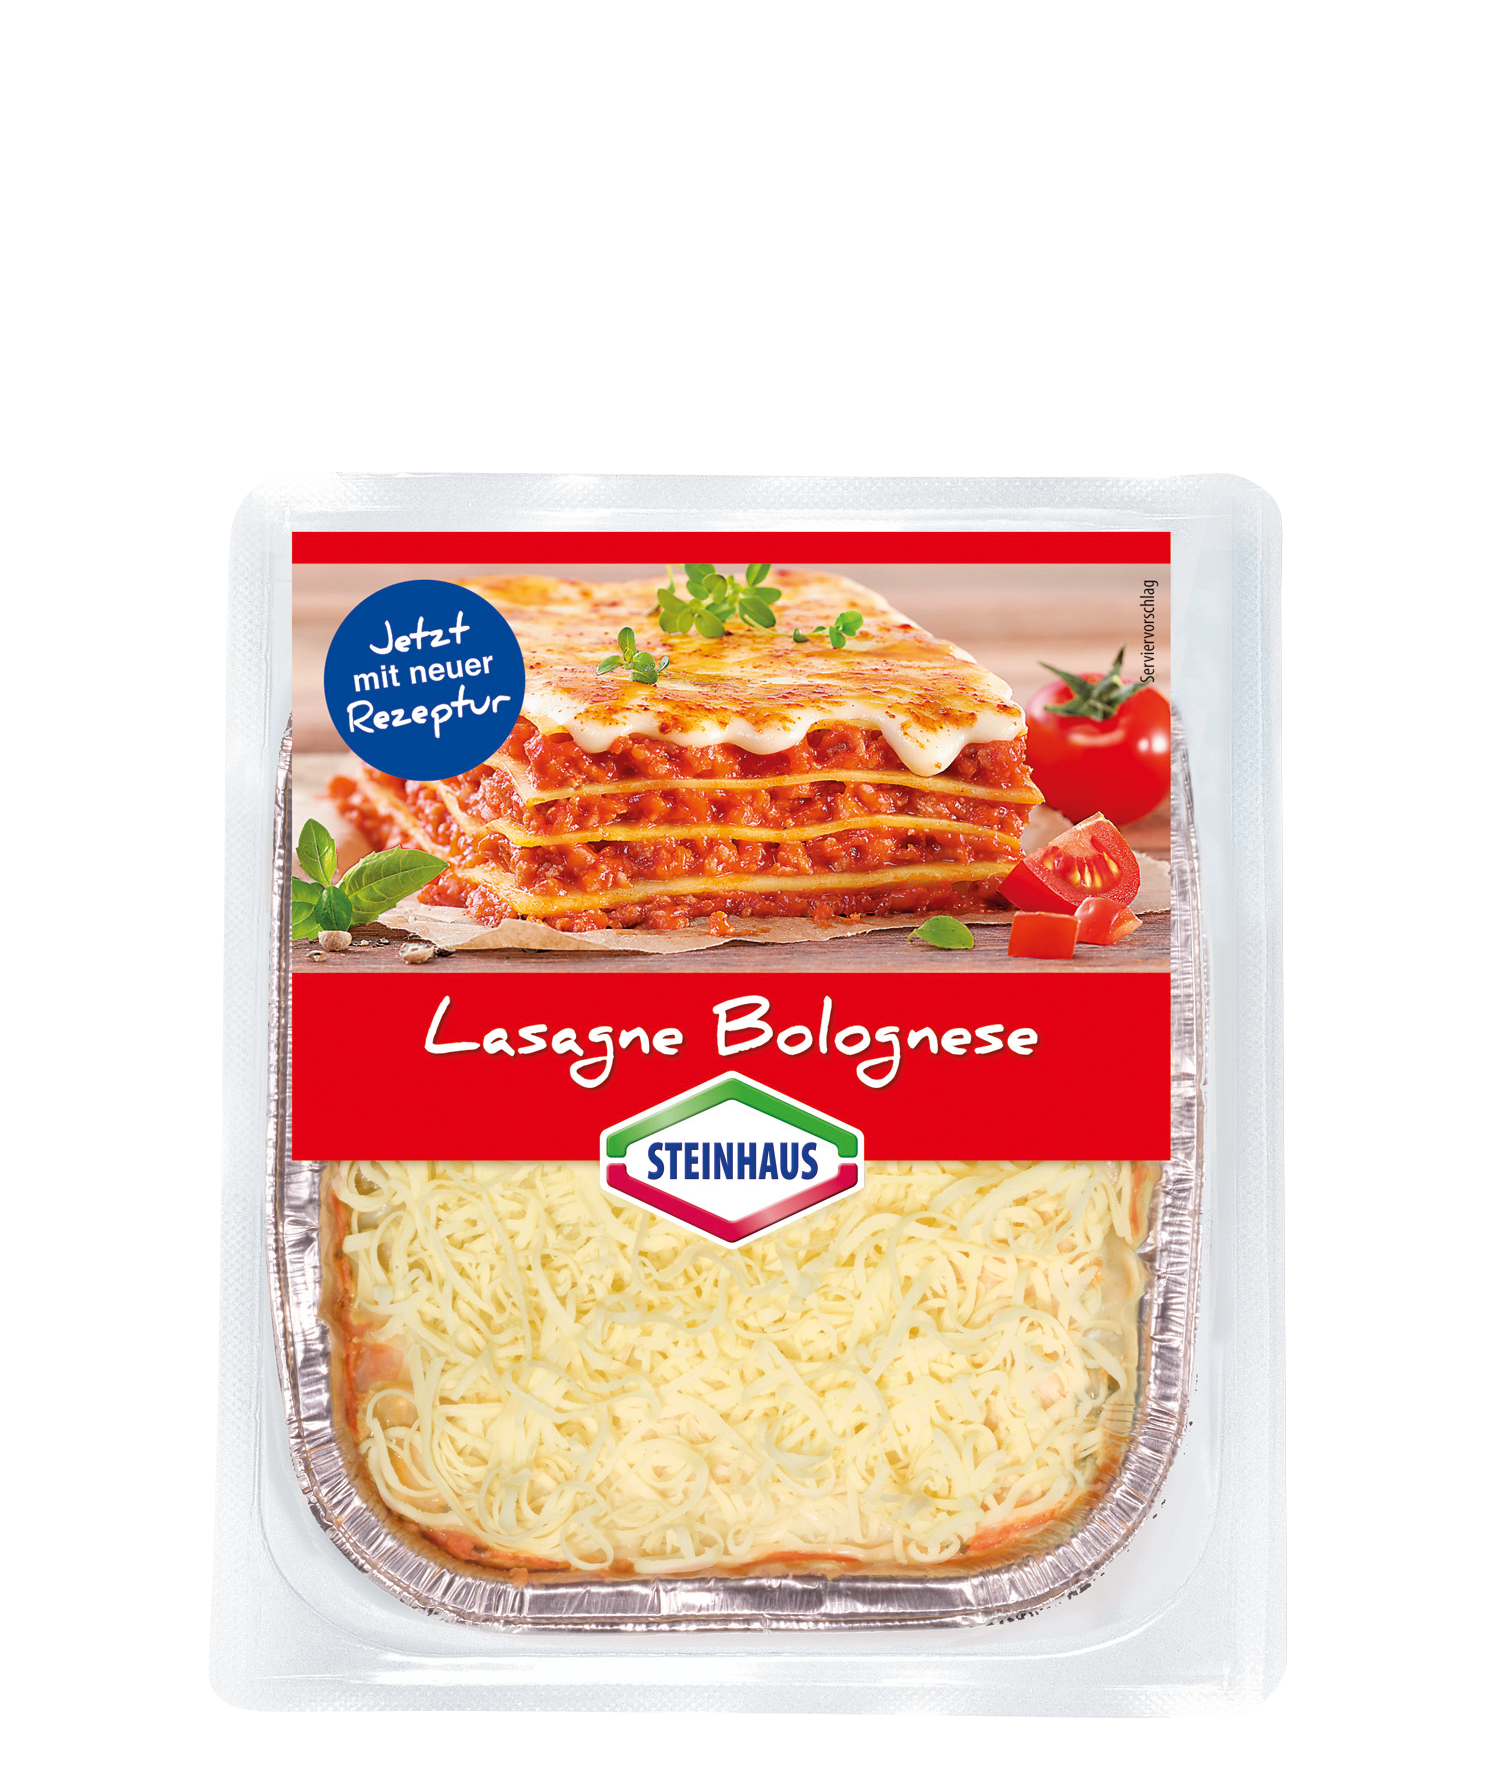 Lasagne Bolognese – Der Klassiker der italienischen Pasta Küche. Die Lasagne besteht aus dünn ausgerollten Teiglagen, die abwechselnd mit Béchamel- und Sauce Bolognese geschichtet werden.